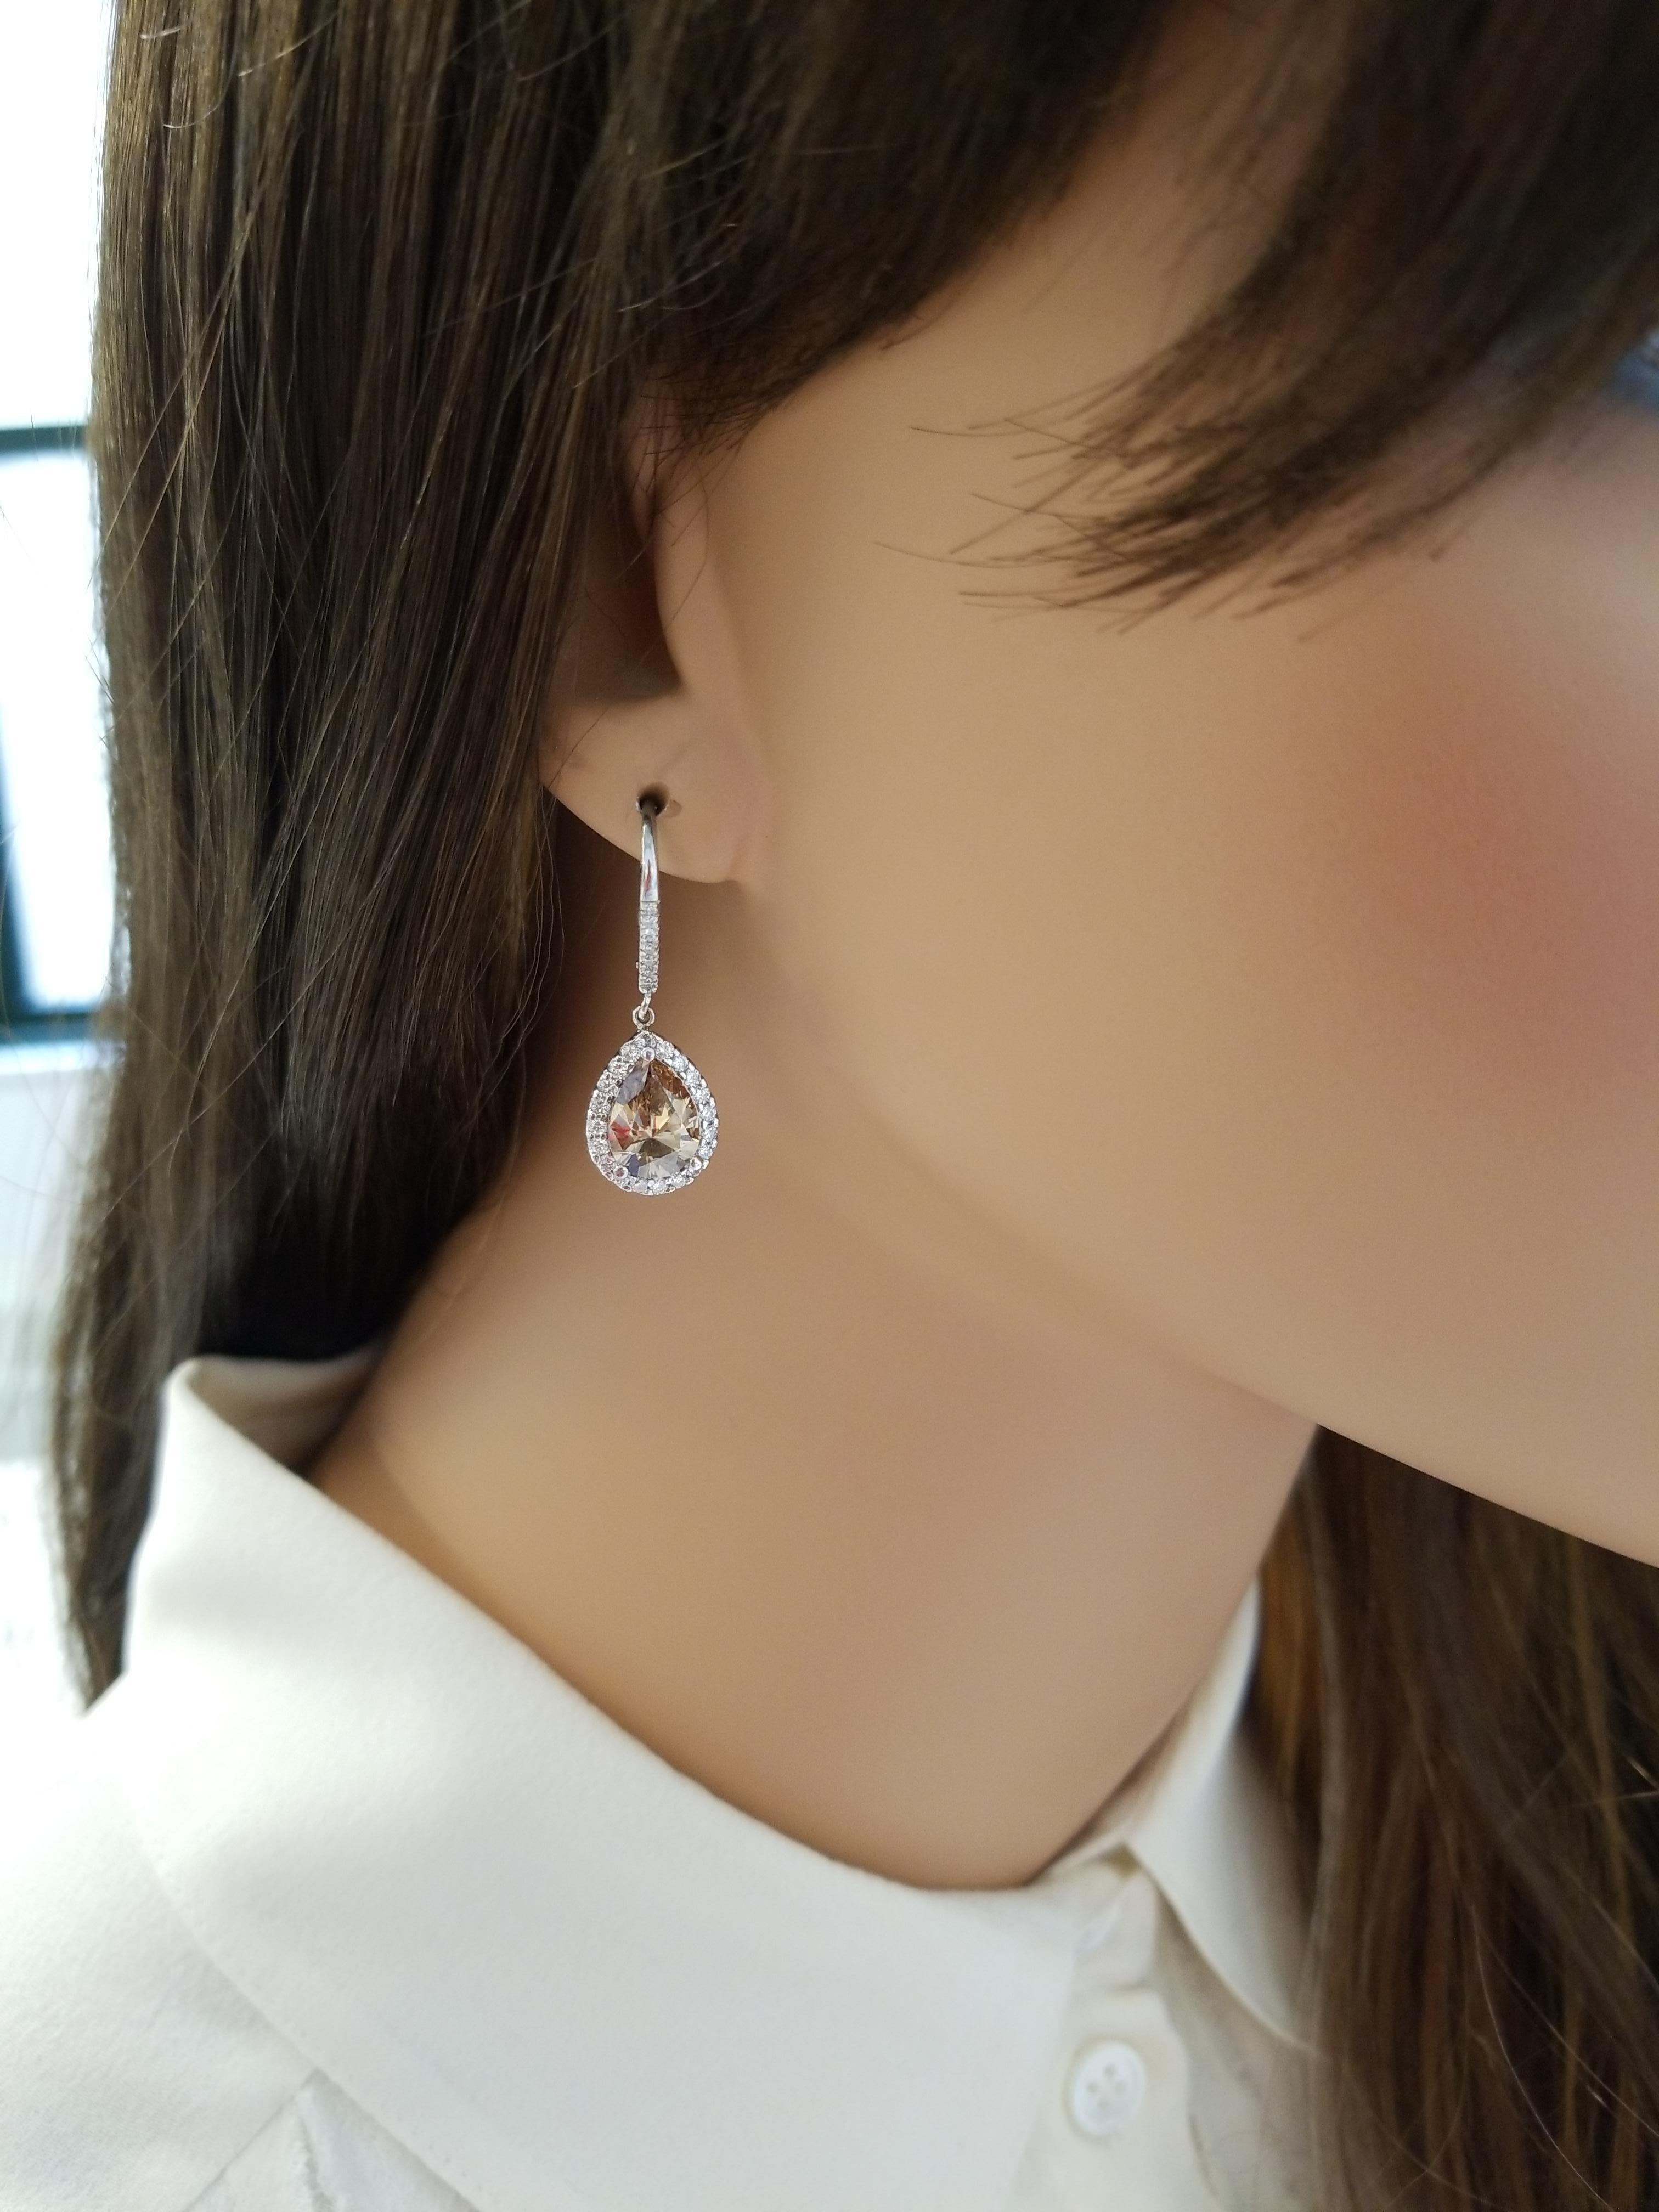 4.00 Carat Total Pear Shaped Fancy Brown Diamond Earrings in 18 Karat White Gold (Tropfenschliff)